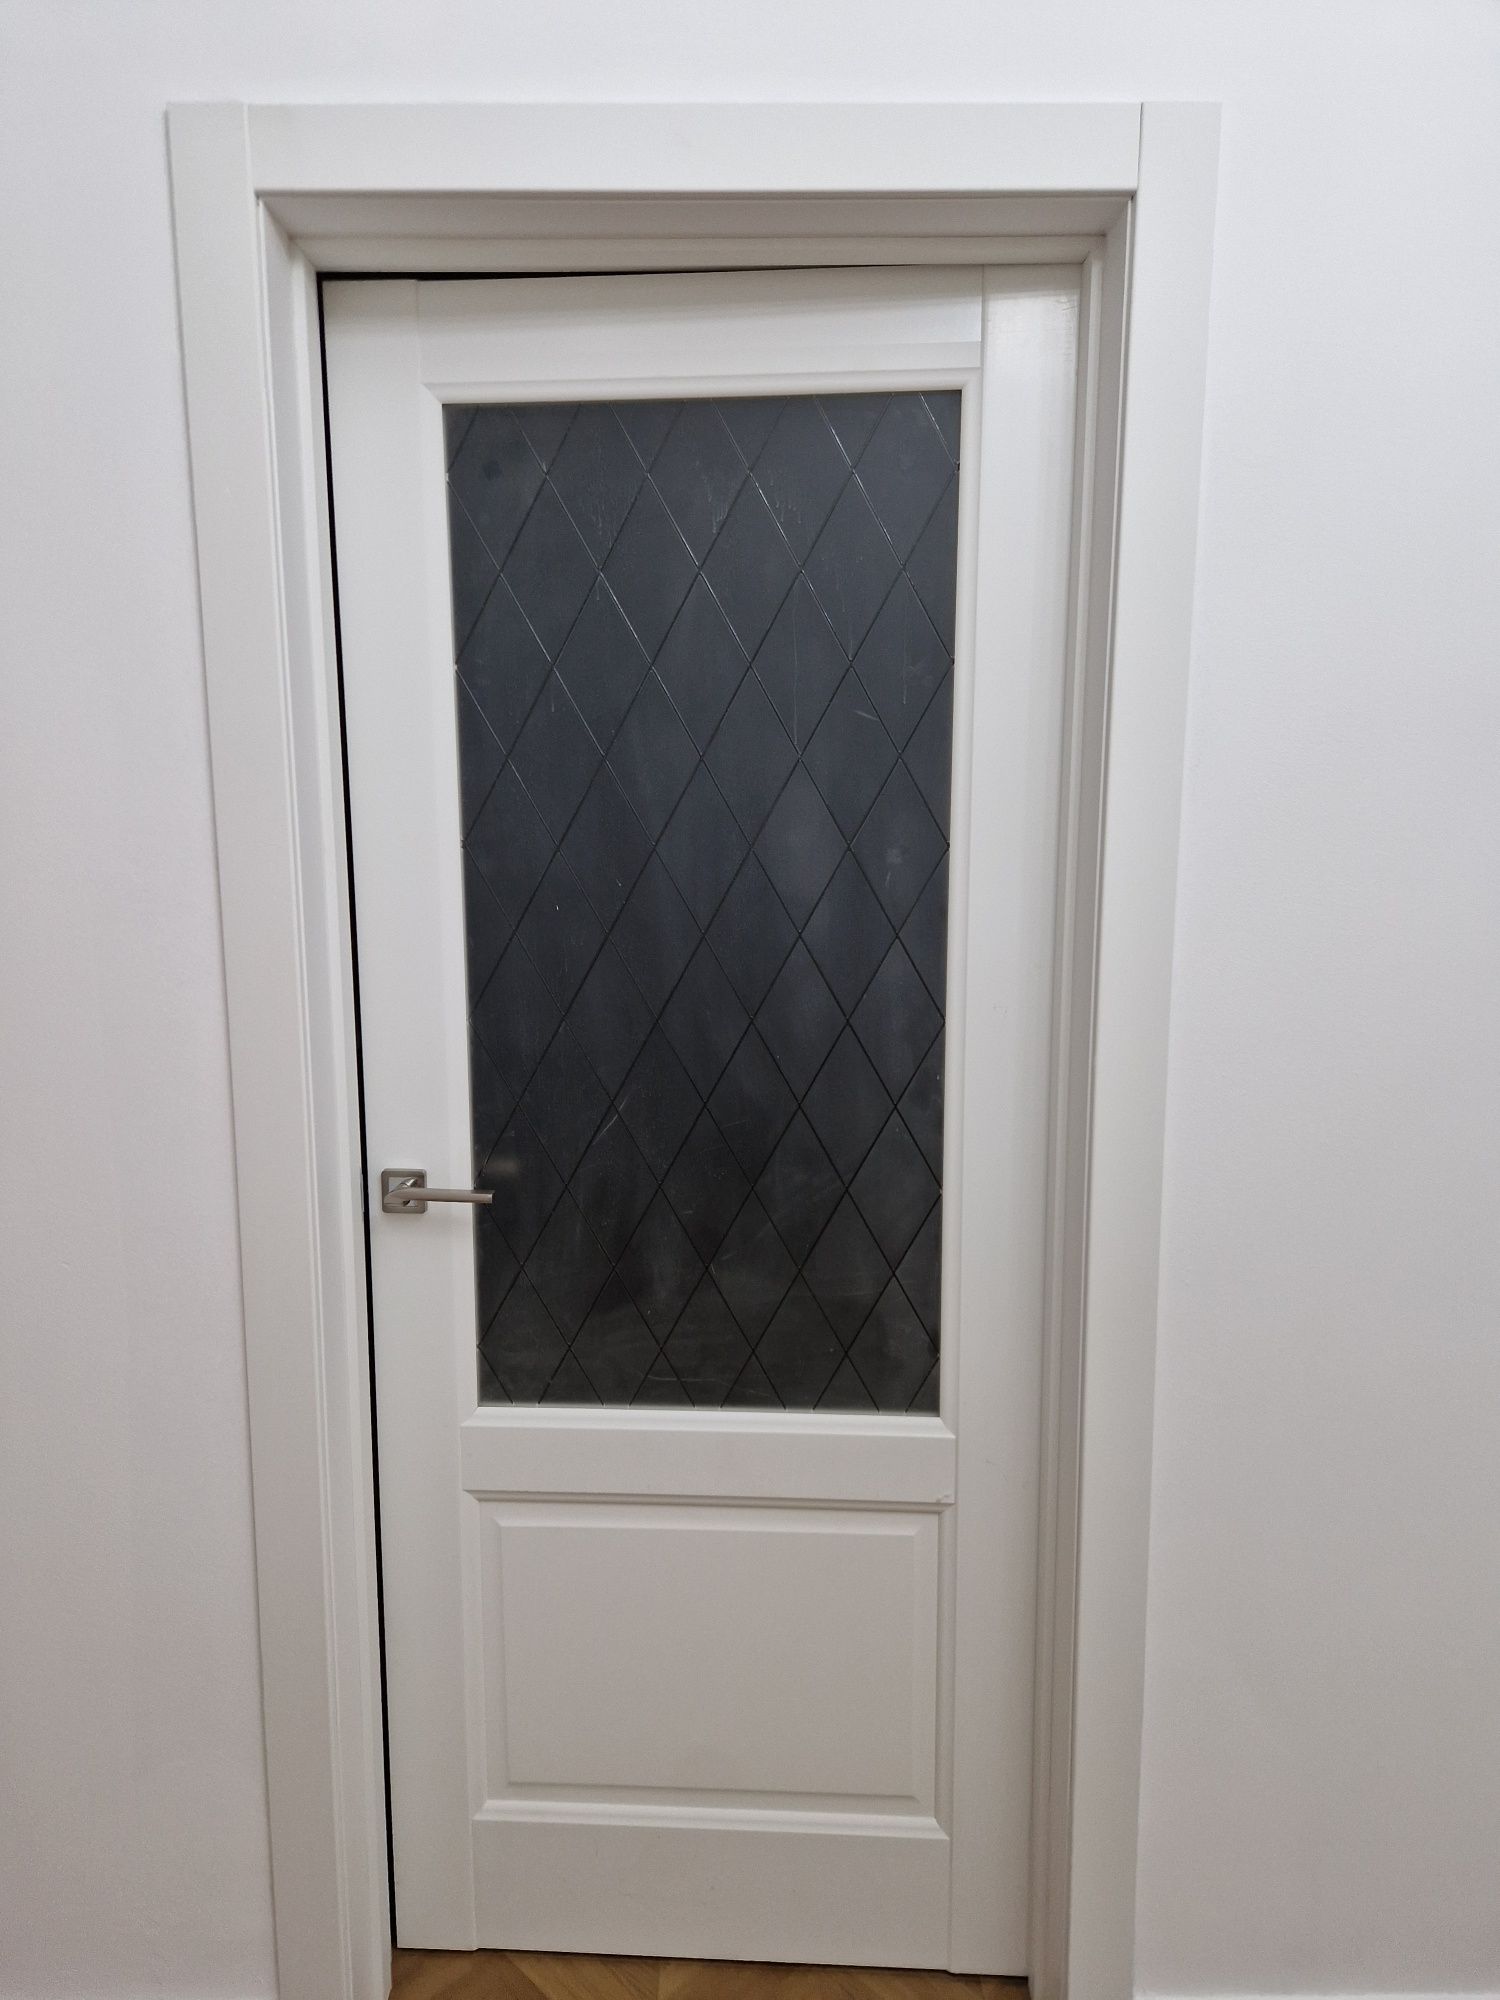 Дверь 120 см×200 см б/у